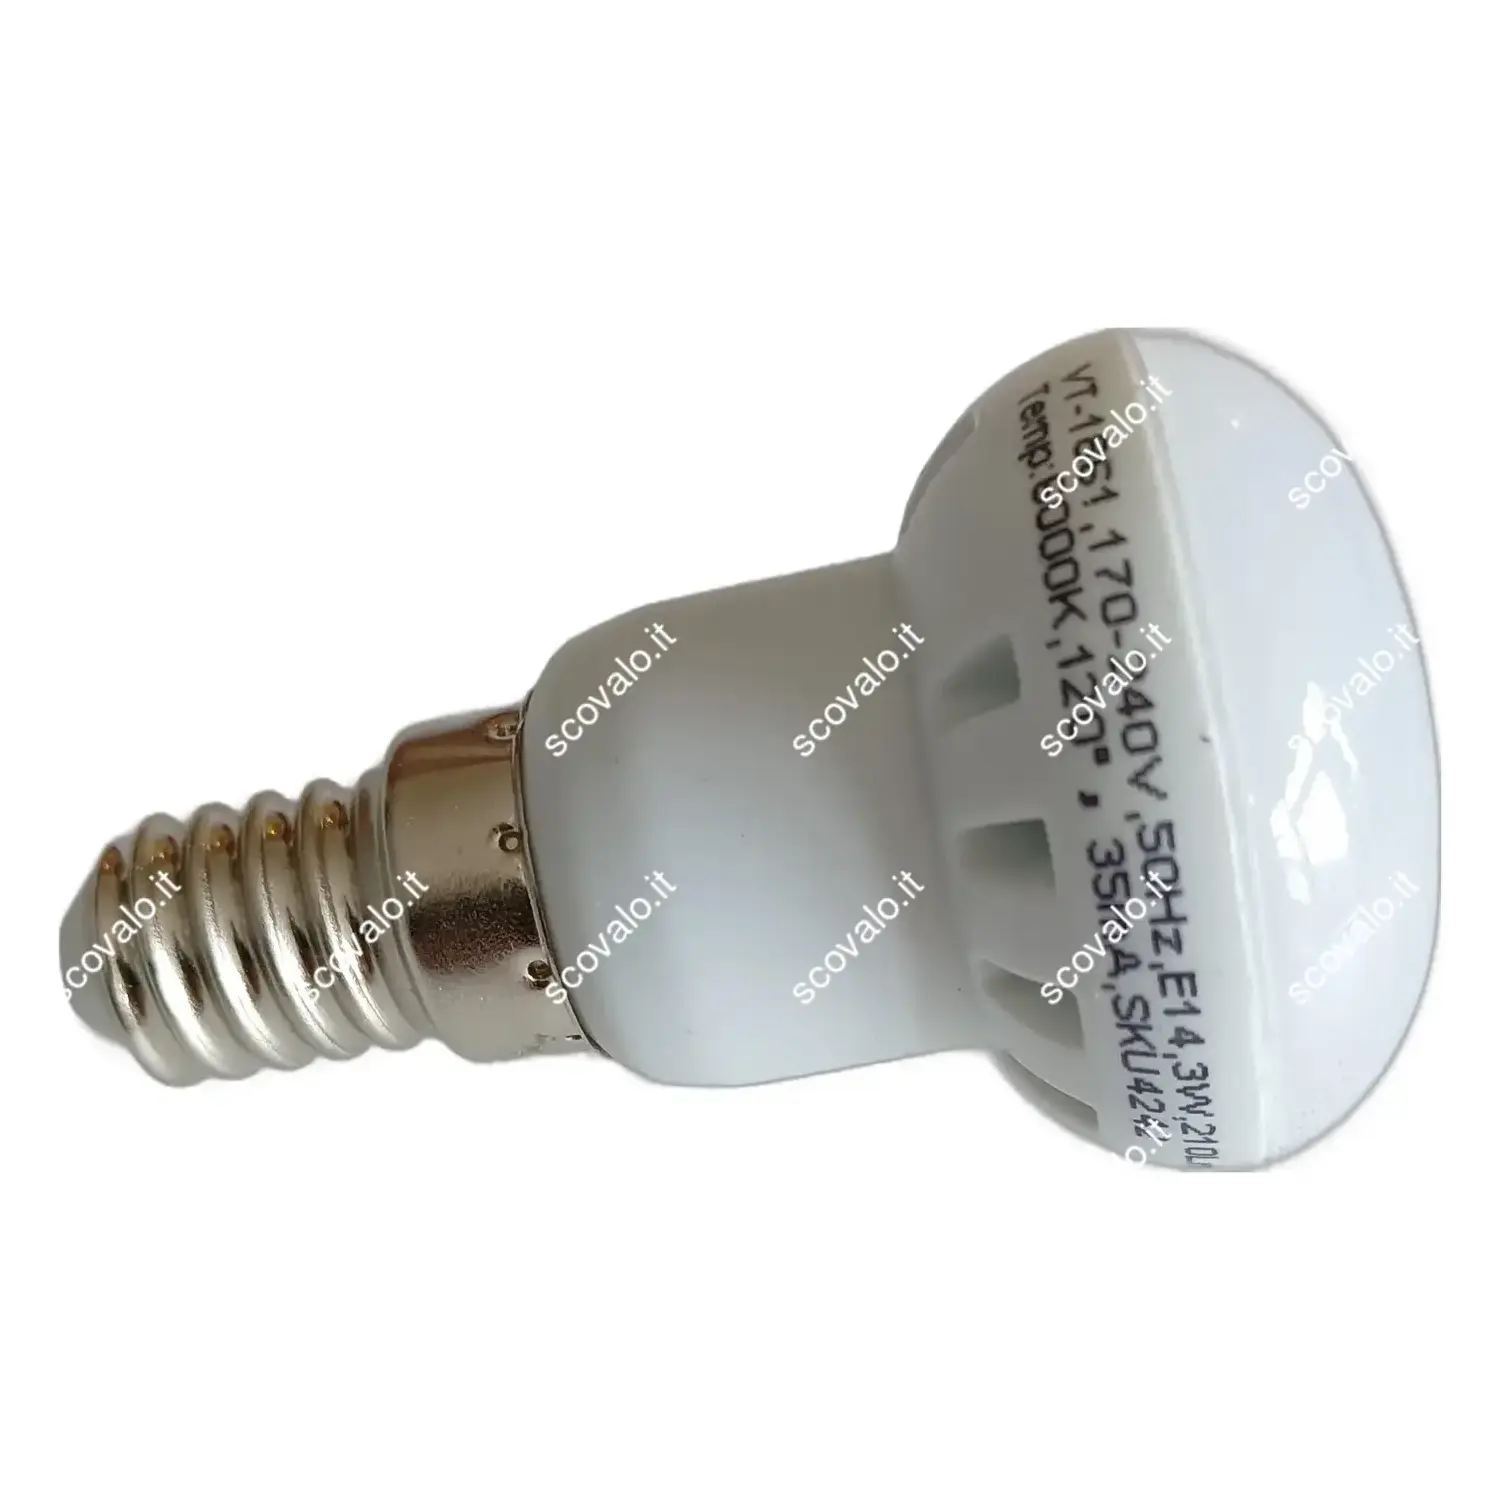 immagine lampadina spot r39 led porta faretto e14 3 watt bianco freddo